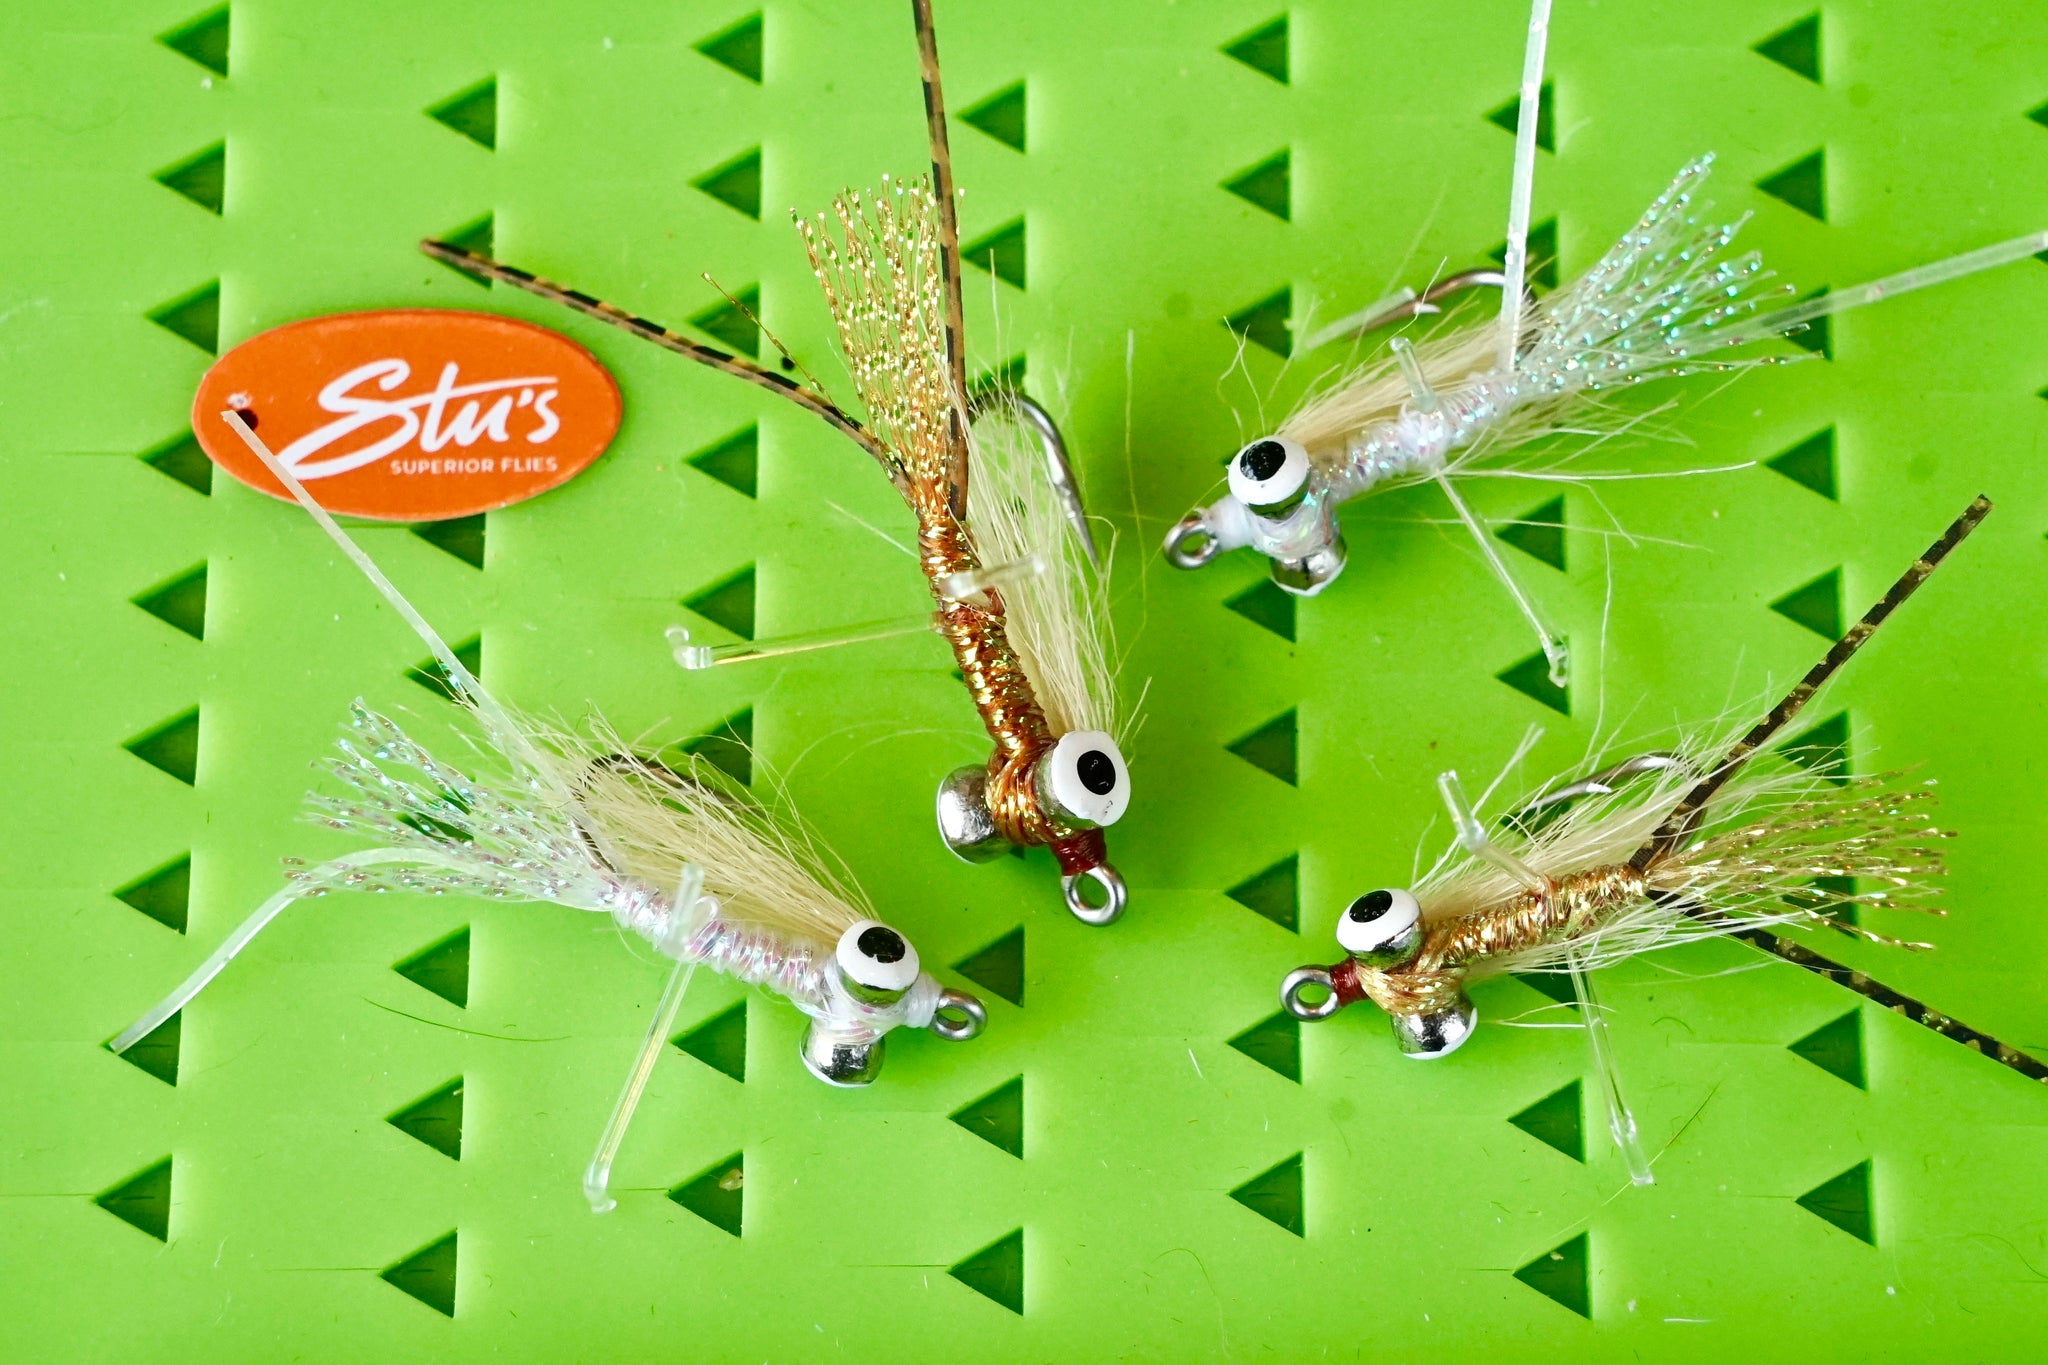 http://stussuperiorflies.com/cdn/shop/files/Bonefishflies-Bonefish-shrimps.jpg?v=1695867012&width=2048